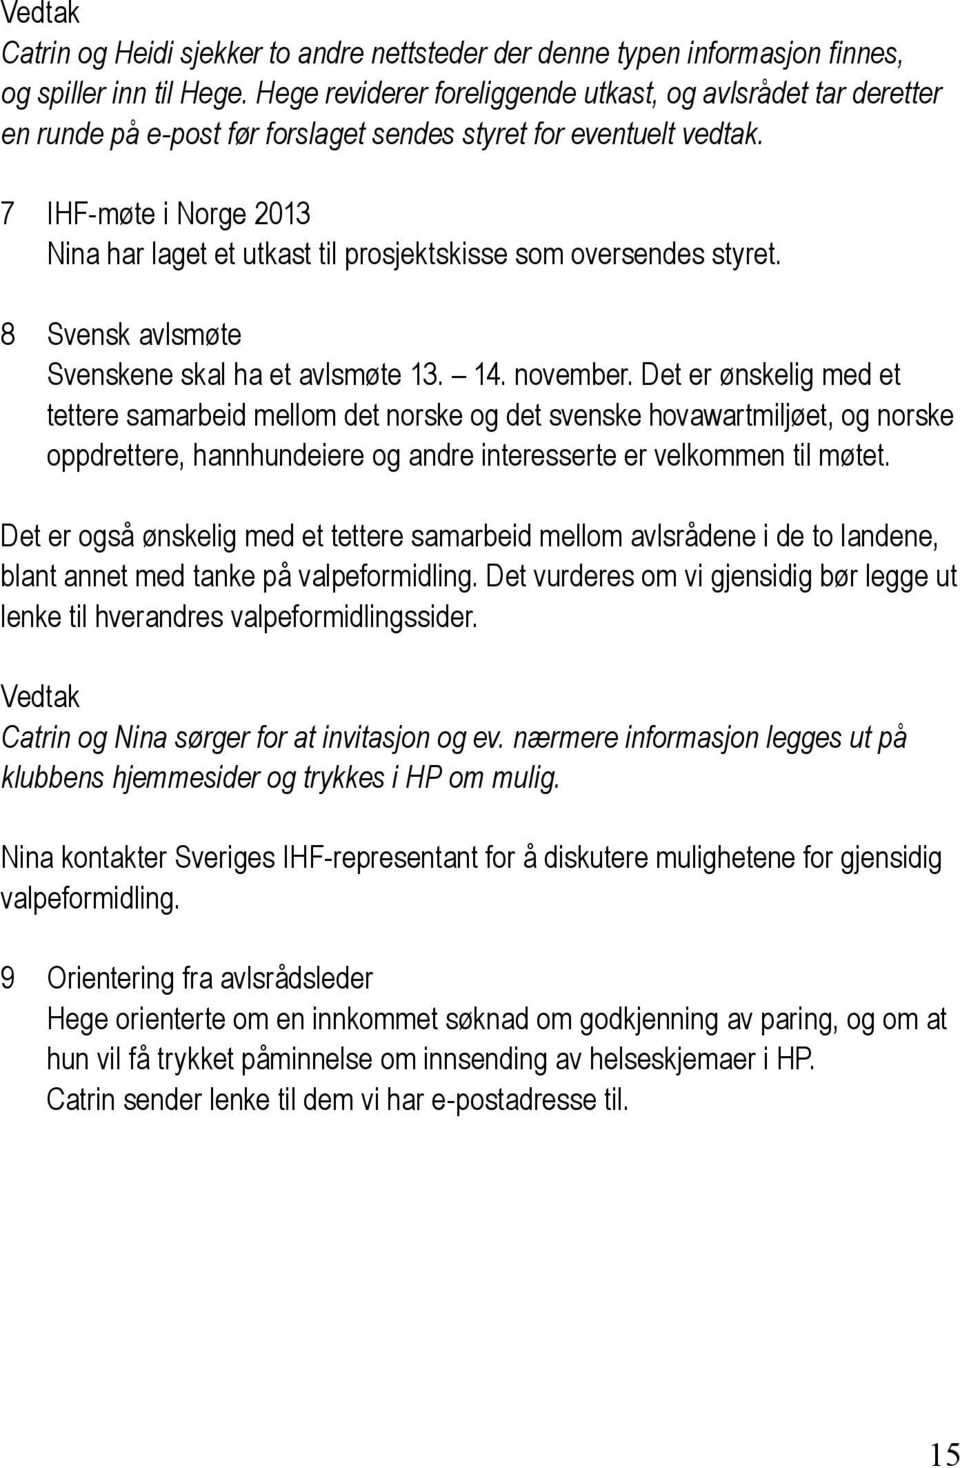 7 IHF-møte i Norge 2013 Nina har laget et utkast til prosjektskisse som oversendes styret. 8 Svensk avlsmøte Svenskene skal ha et avlsmøte 13. 14. november.